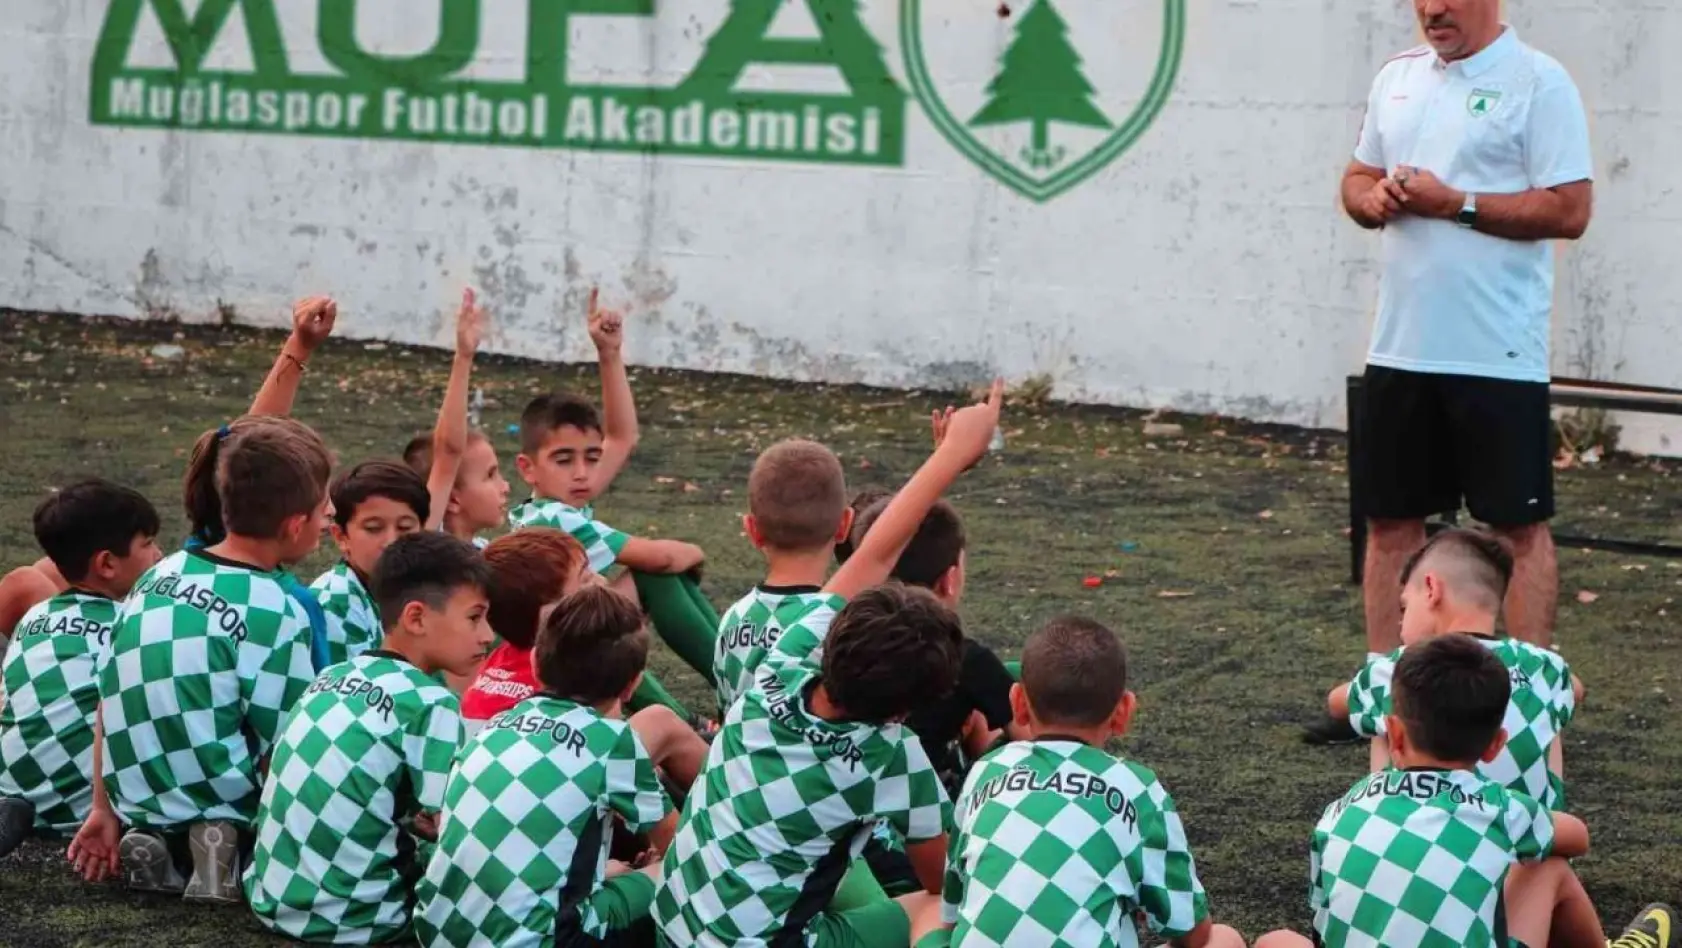 Muğlaspor Kış Futbol Okulu 17 Eylül'de başlıyor